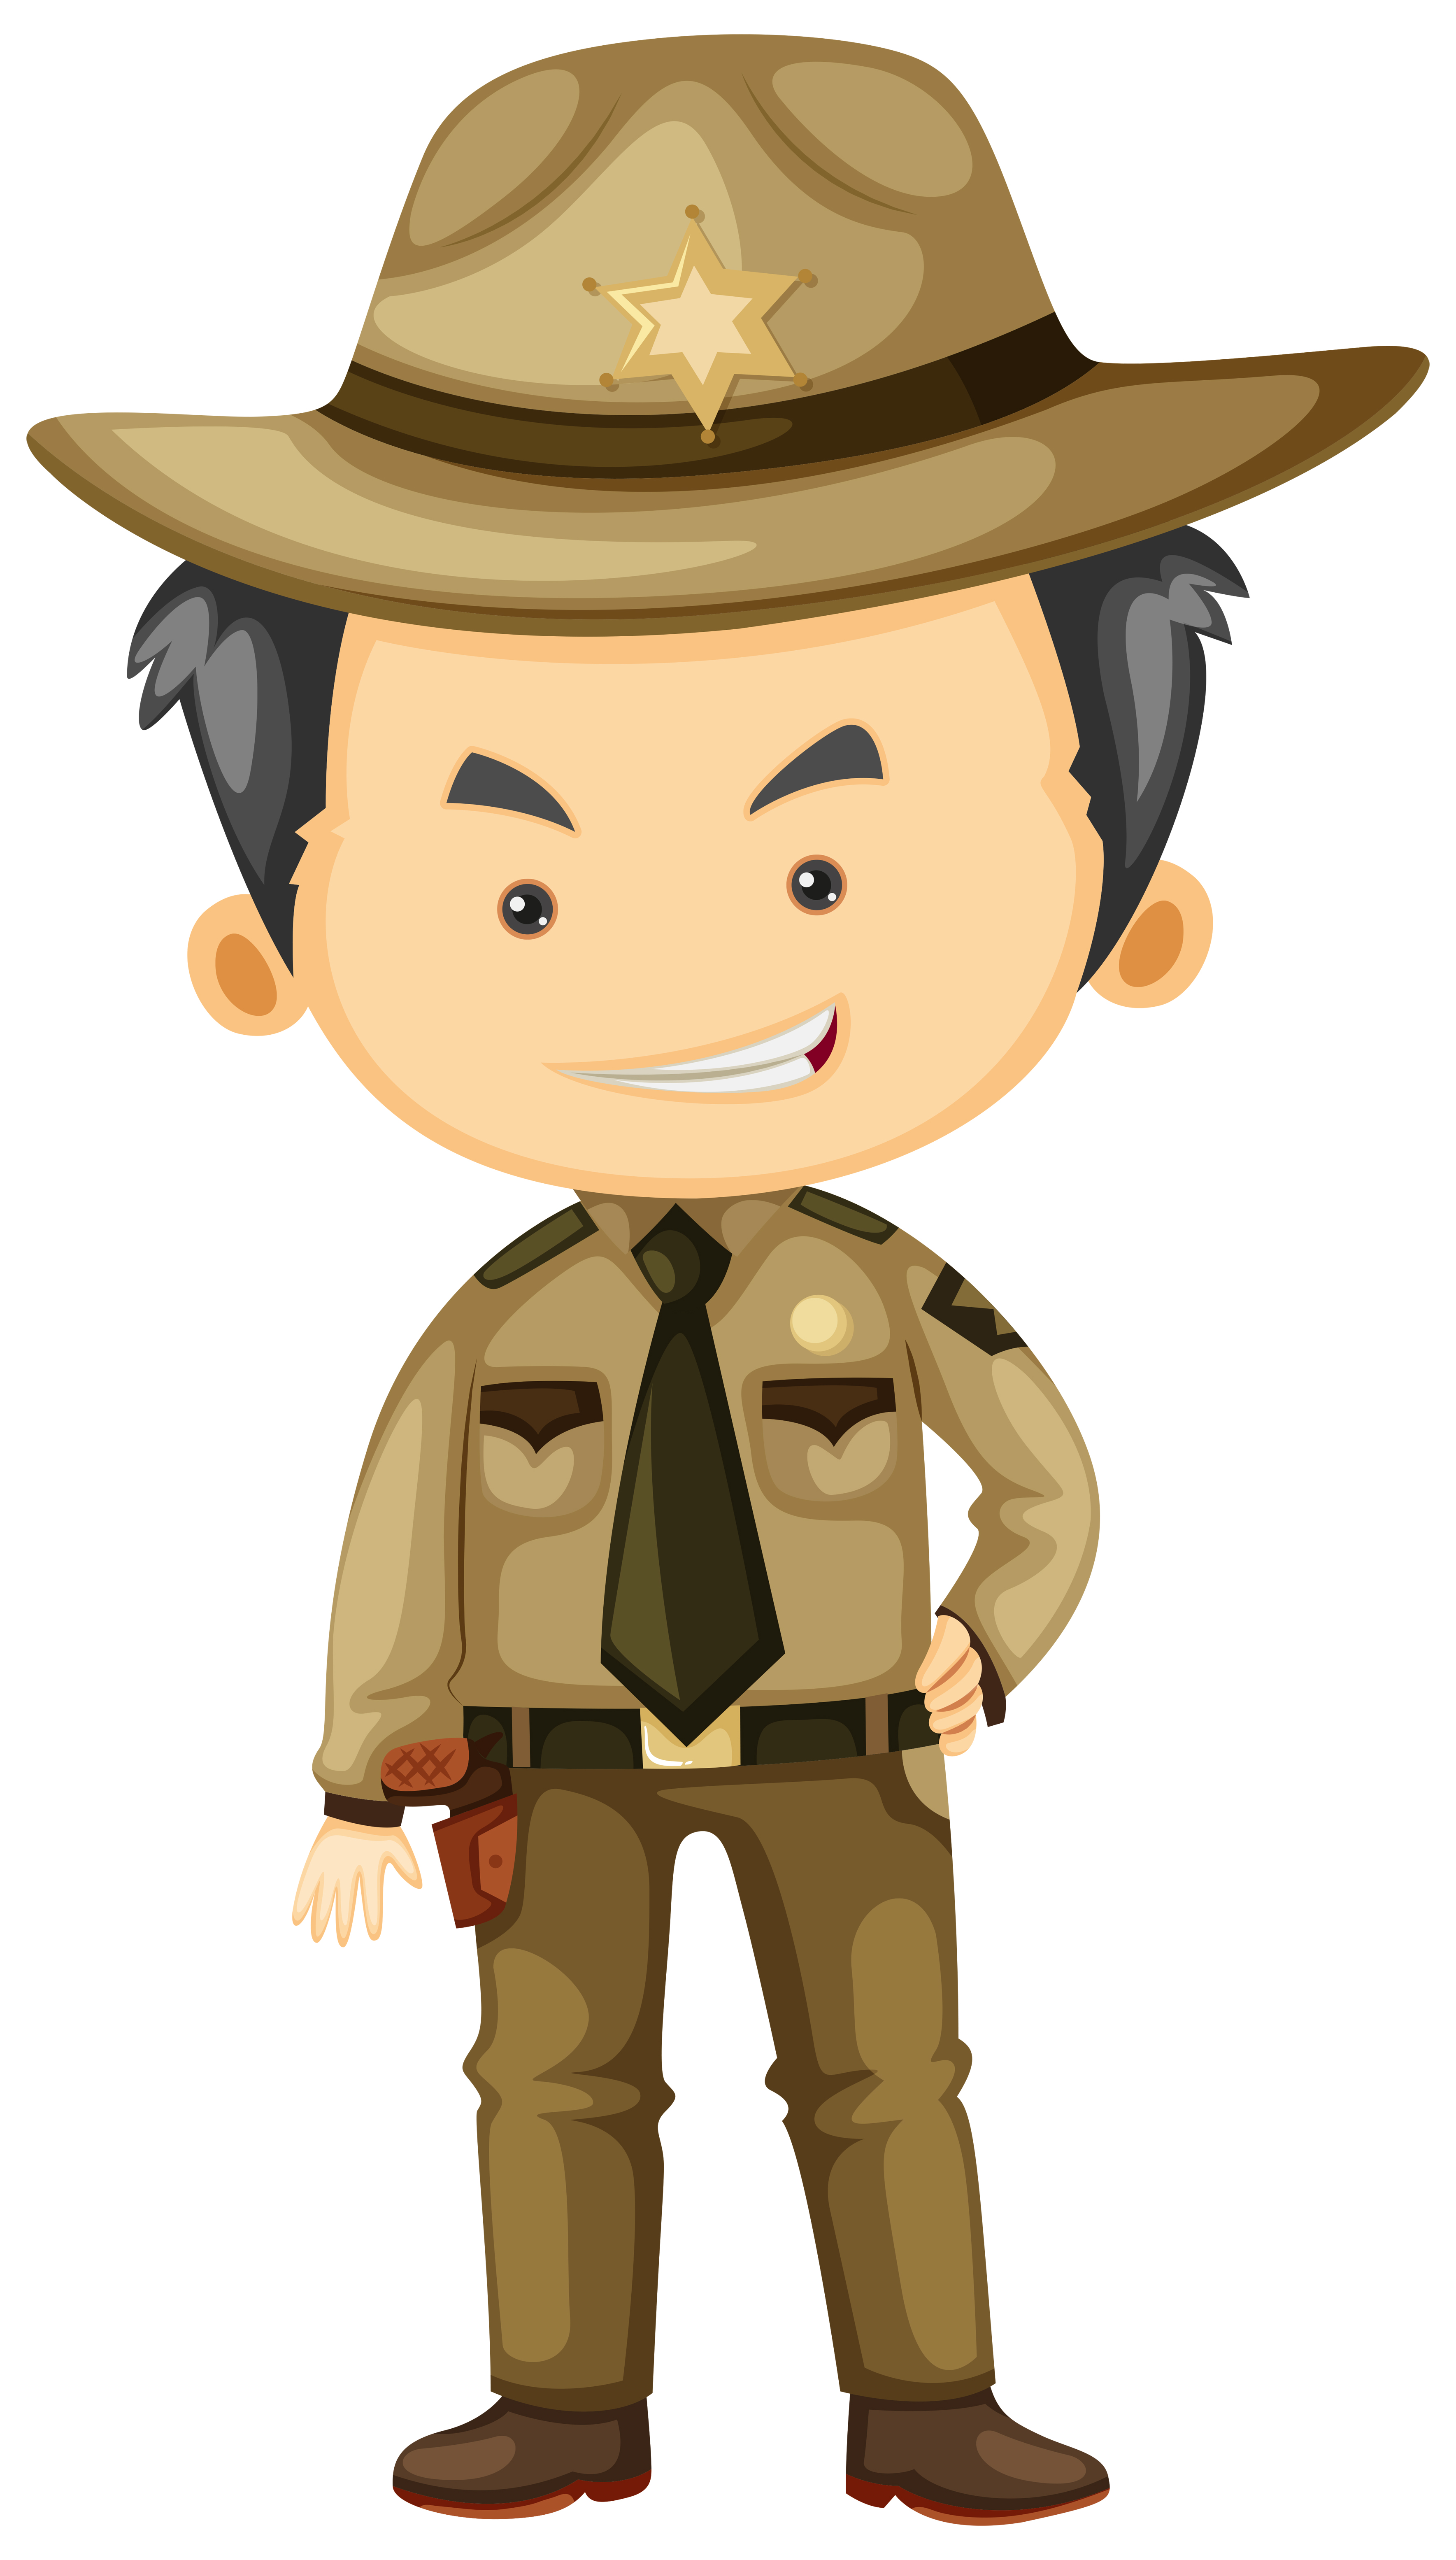 Sheriff in brown uniform 550153 Vector Art at Vecteezy